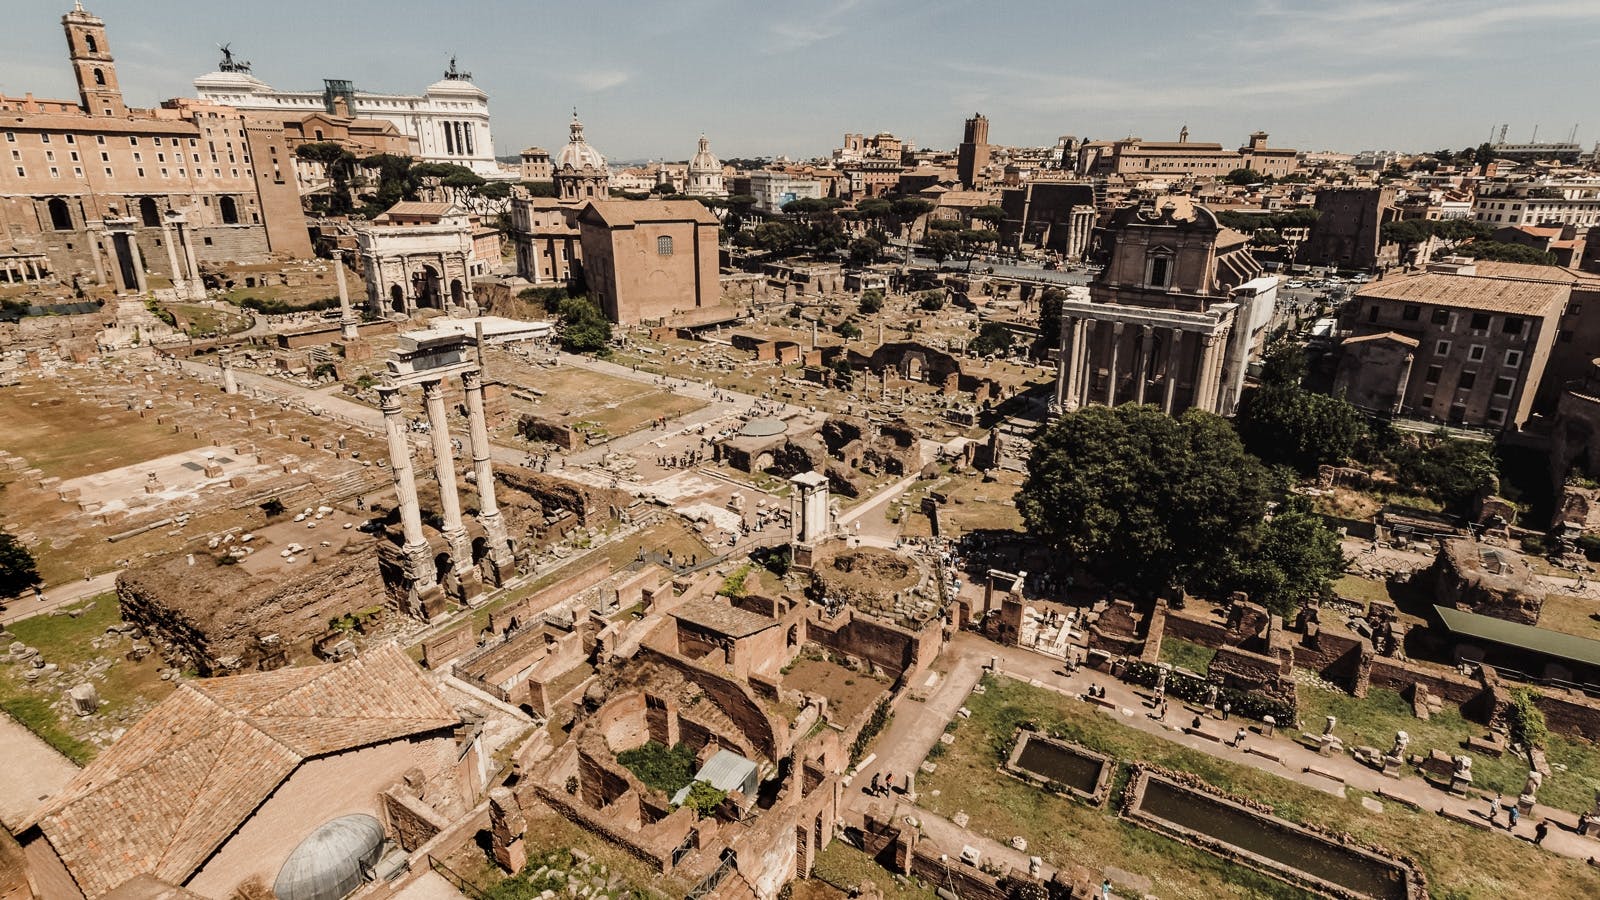 Lo mejor de Roma, recorrido a pie y acceso rápido al Foro Romano